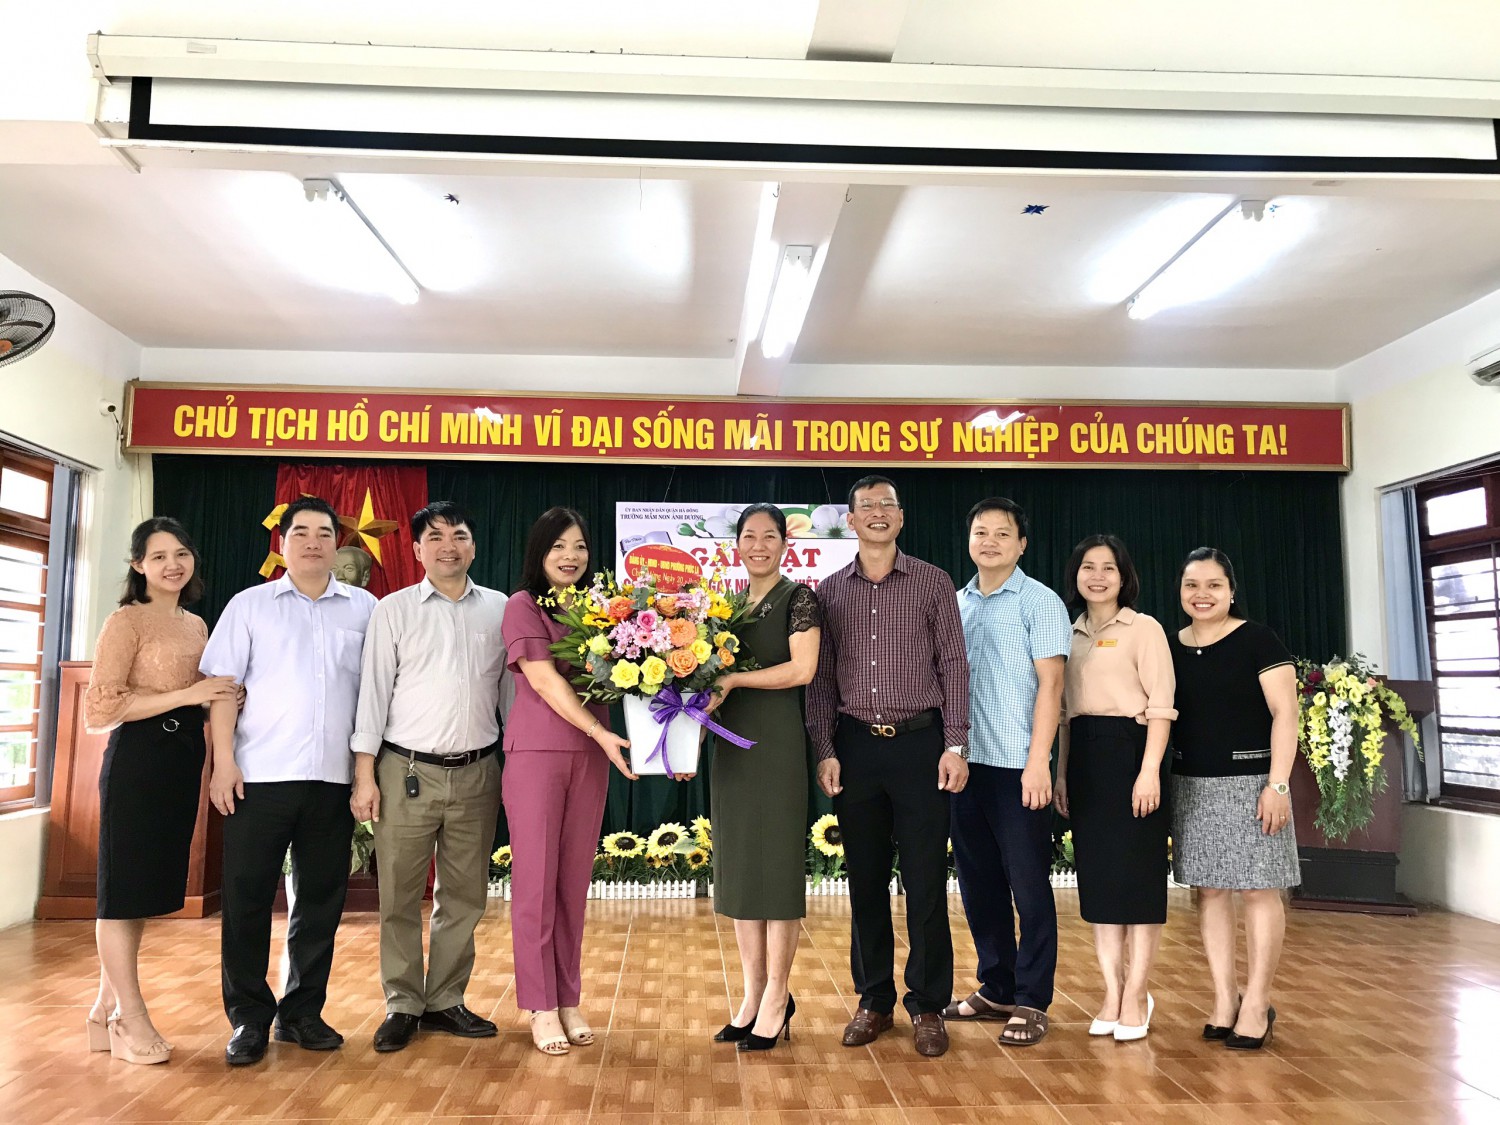 UBND phường Phúc La tặng hoa BGH nhà trường nhân dịp Ngày nhà giáo Việt Nam 20 11